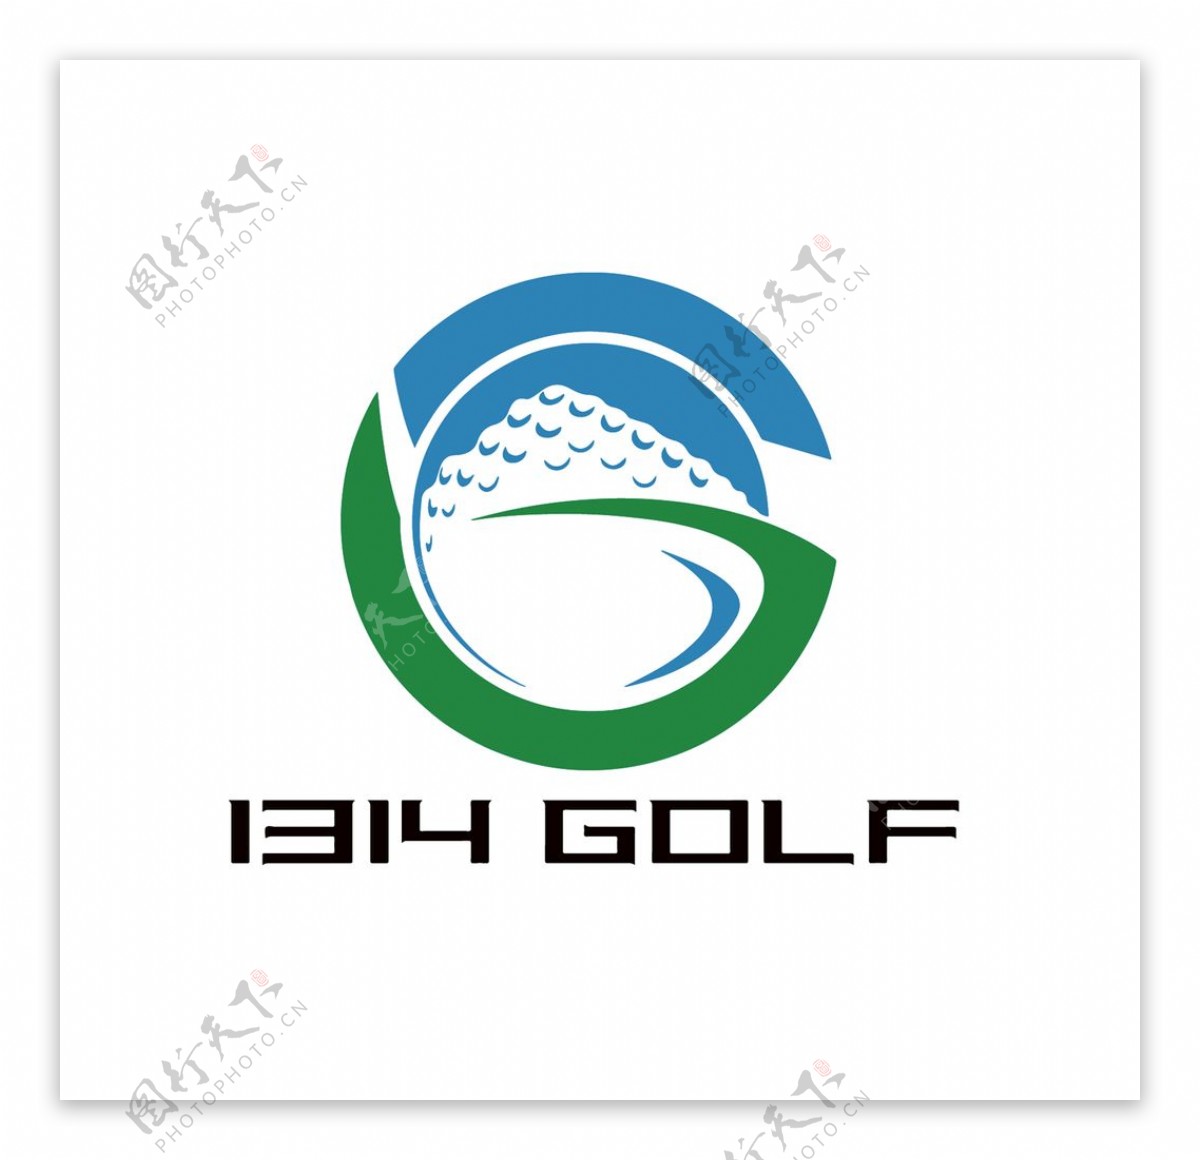 1314高尔夫logo